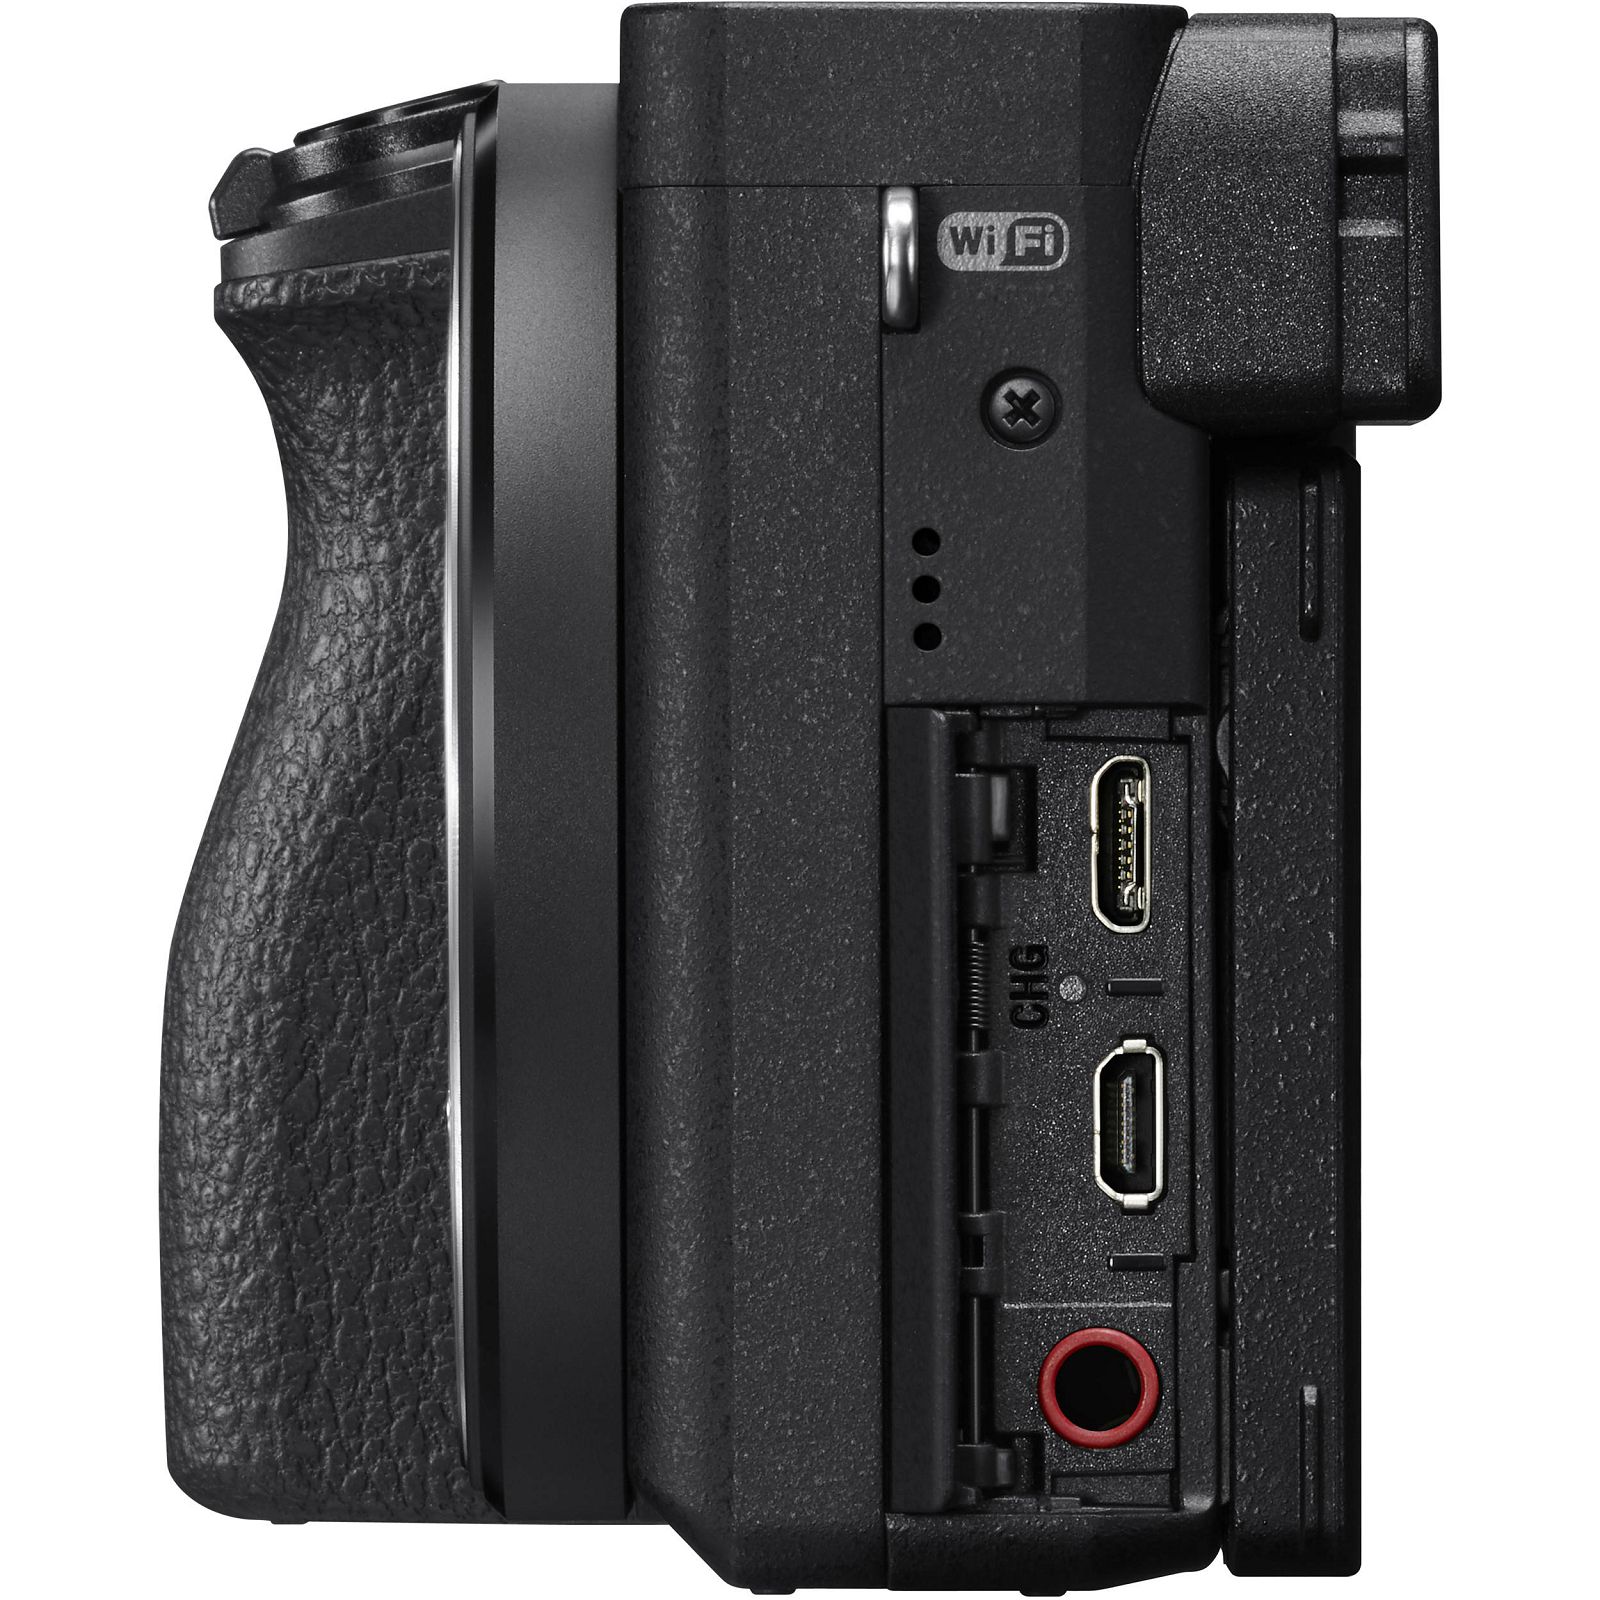 Sony Alpha a6500 + 18-135 f/3.5-5.6 OSS KIT Black Mirrorless Digital Camera crni bezrcalni digitalni fotoaparat i allround objektiv SEL18135 18-135mm F3.5-5.6 ILCE-6500MB ILCE6500MB ILCE6500MB.CEC